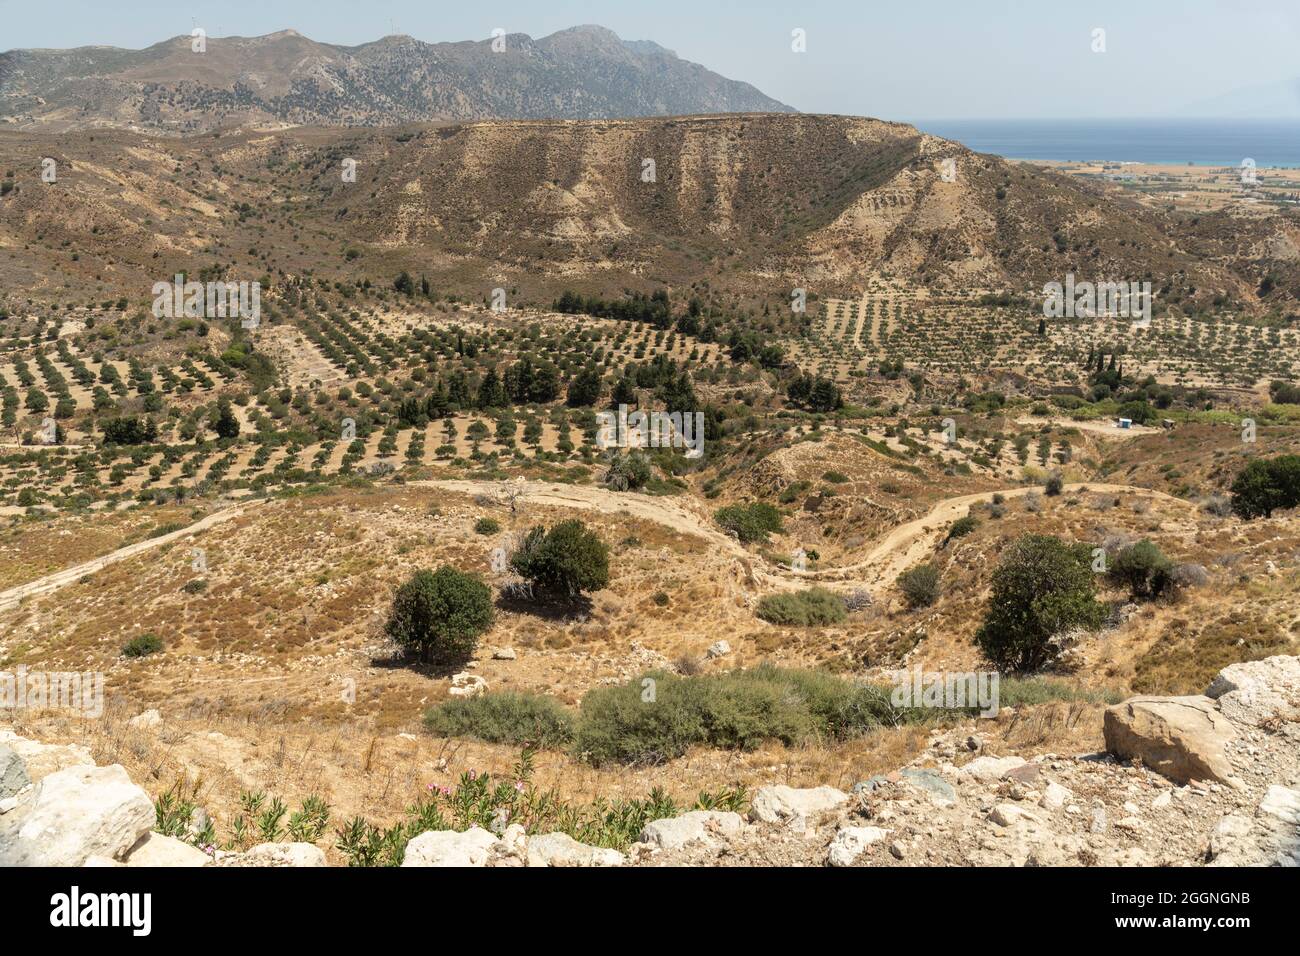 Vues panoramiques sur la campagne environnante depuis le château d'Antimachia à Kos, île du Dodécanèse, Grèce Banque D'Images